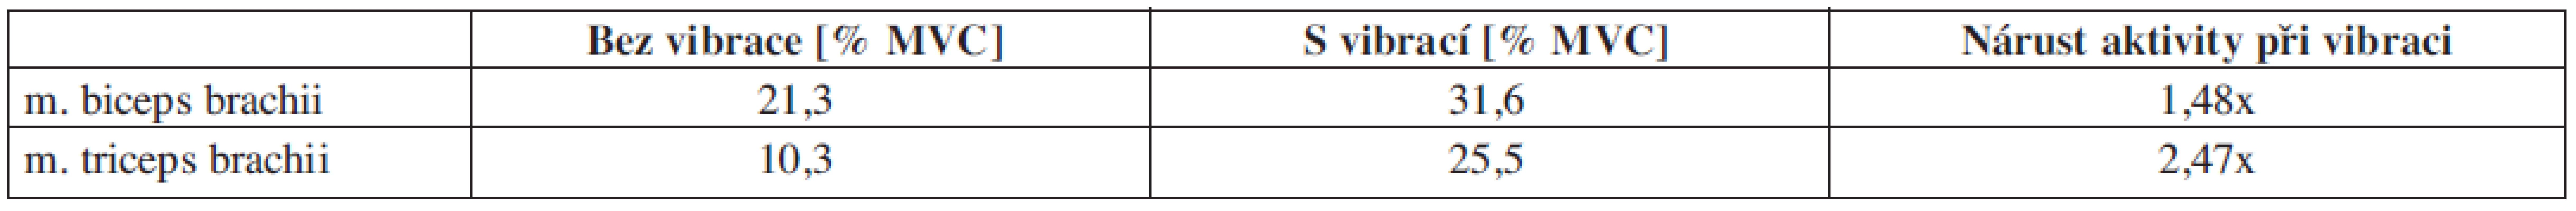 Proband č. 1 – relativní hodnoty plochy pod křivkou pro statickou zátěž vyjádřené v procentech MVC s vibrací a bez vibrace.